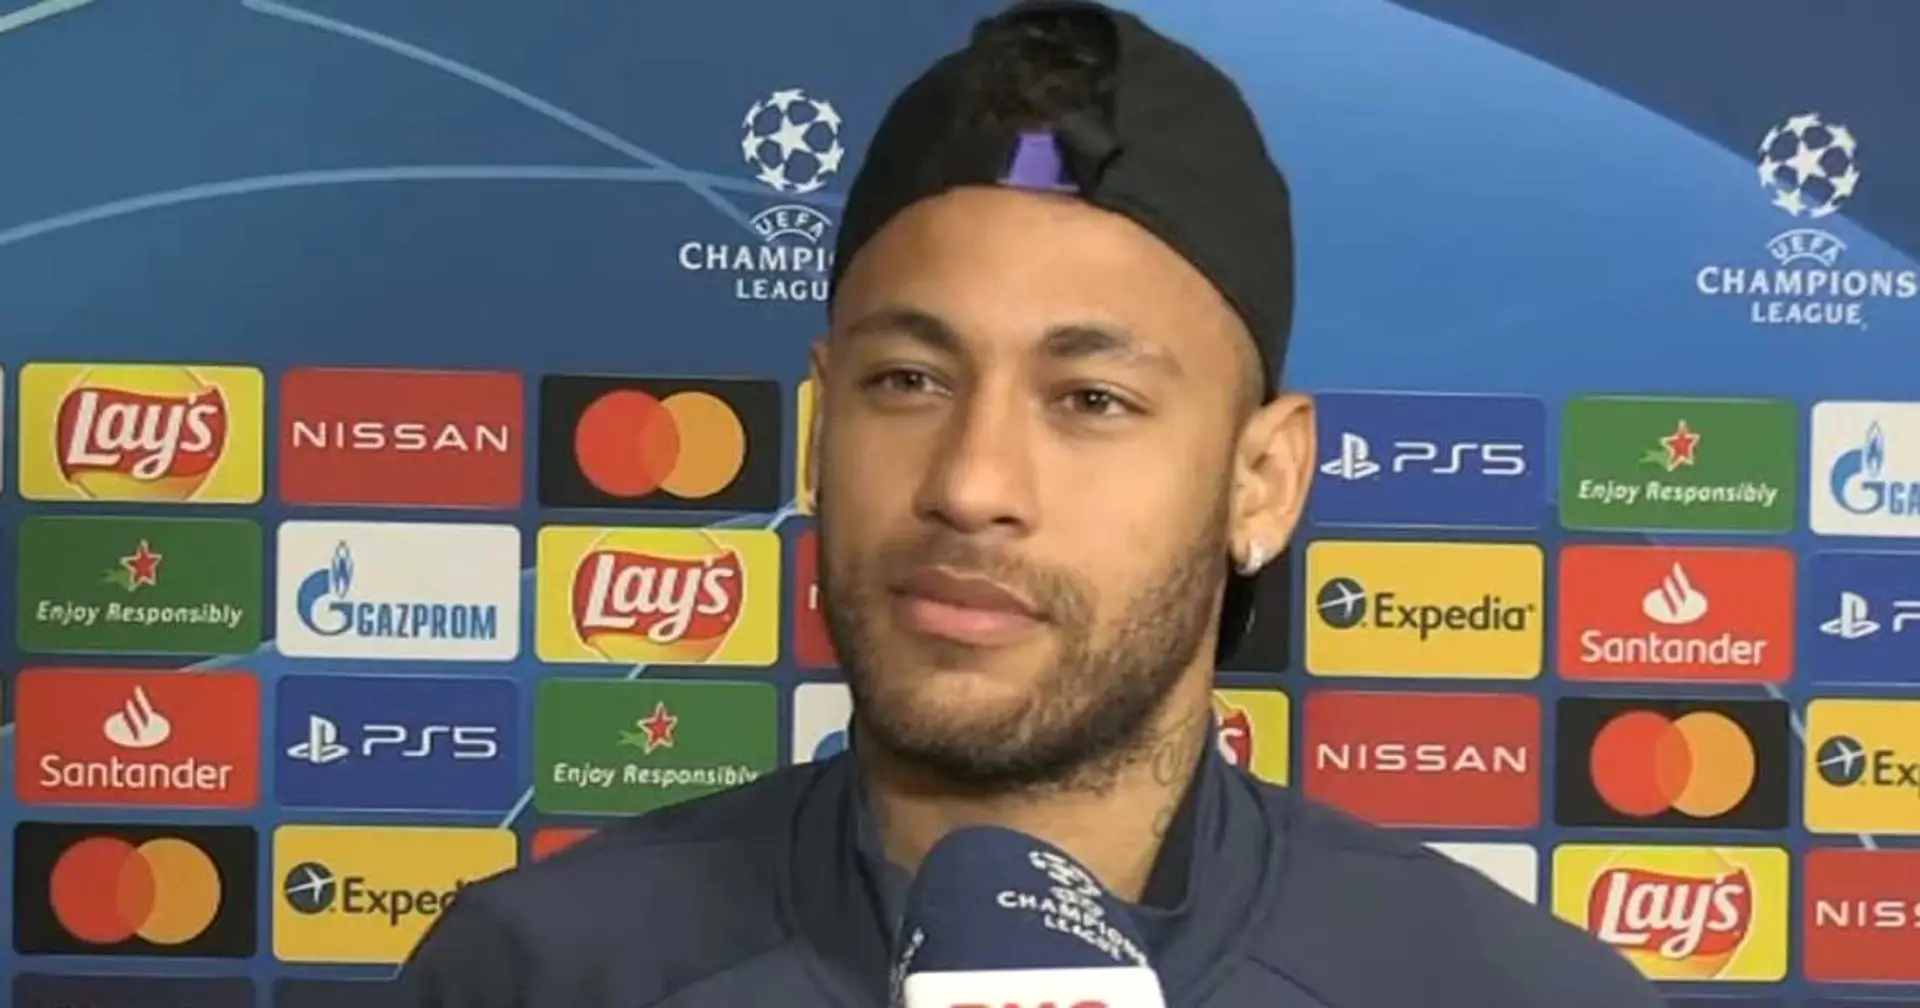 "Ça nous renforce d’être ensemble au quotidien", Neymar souligne l'importance des tournées de pré-saison